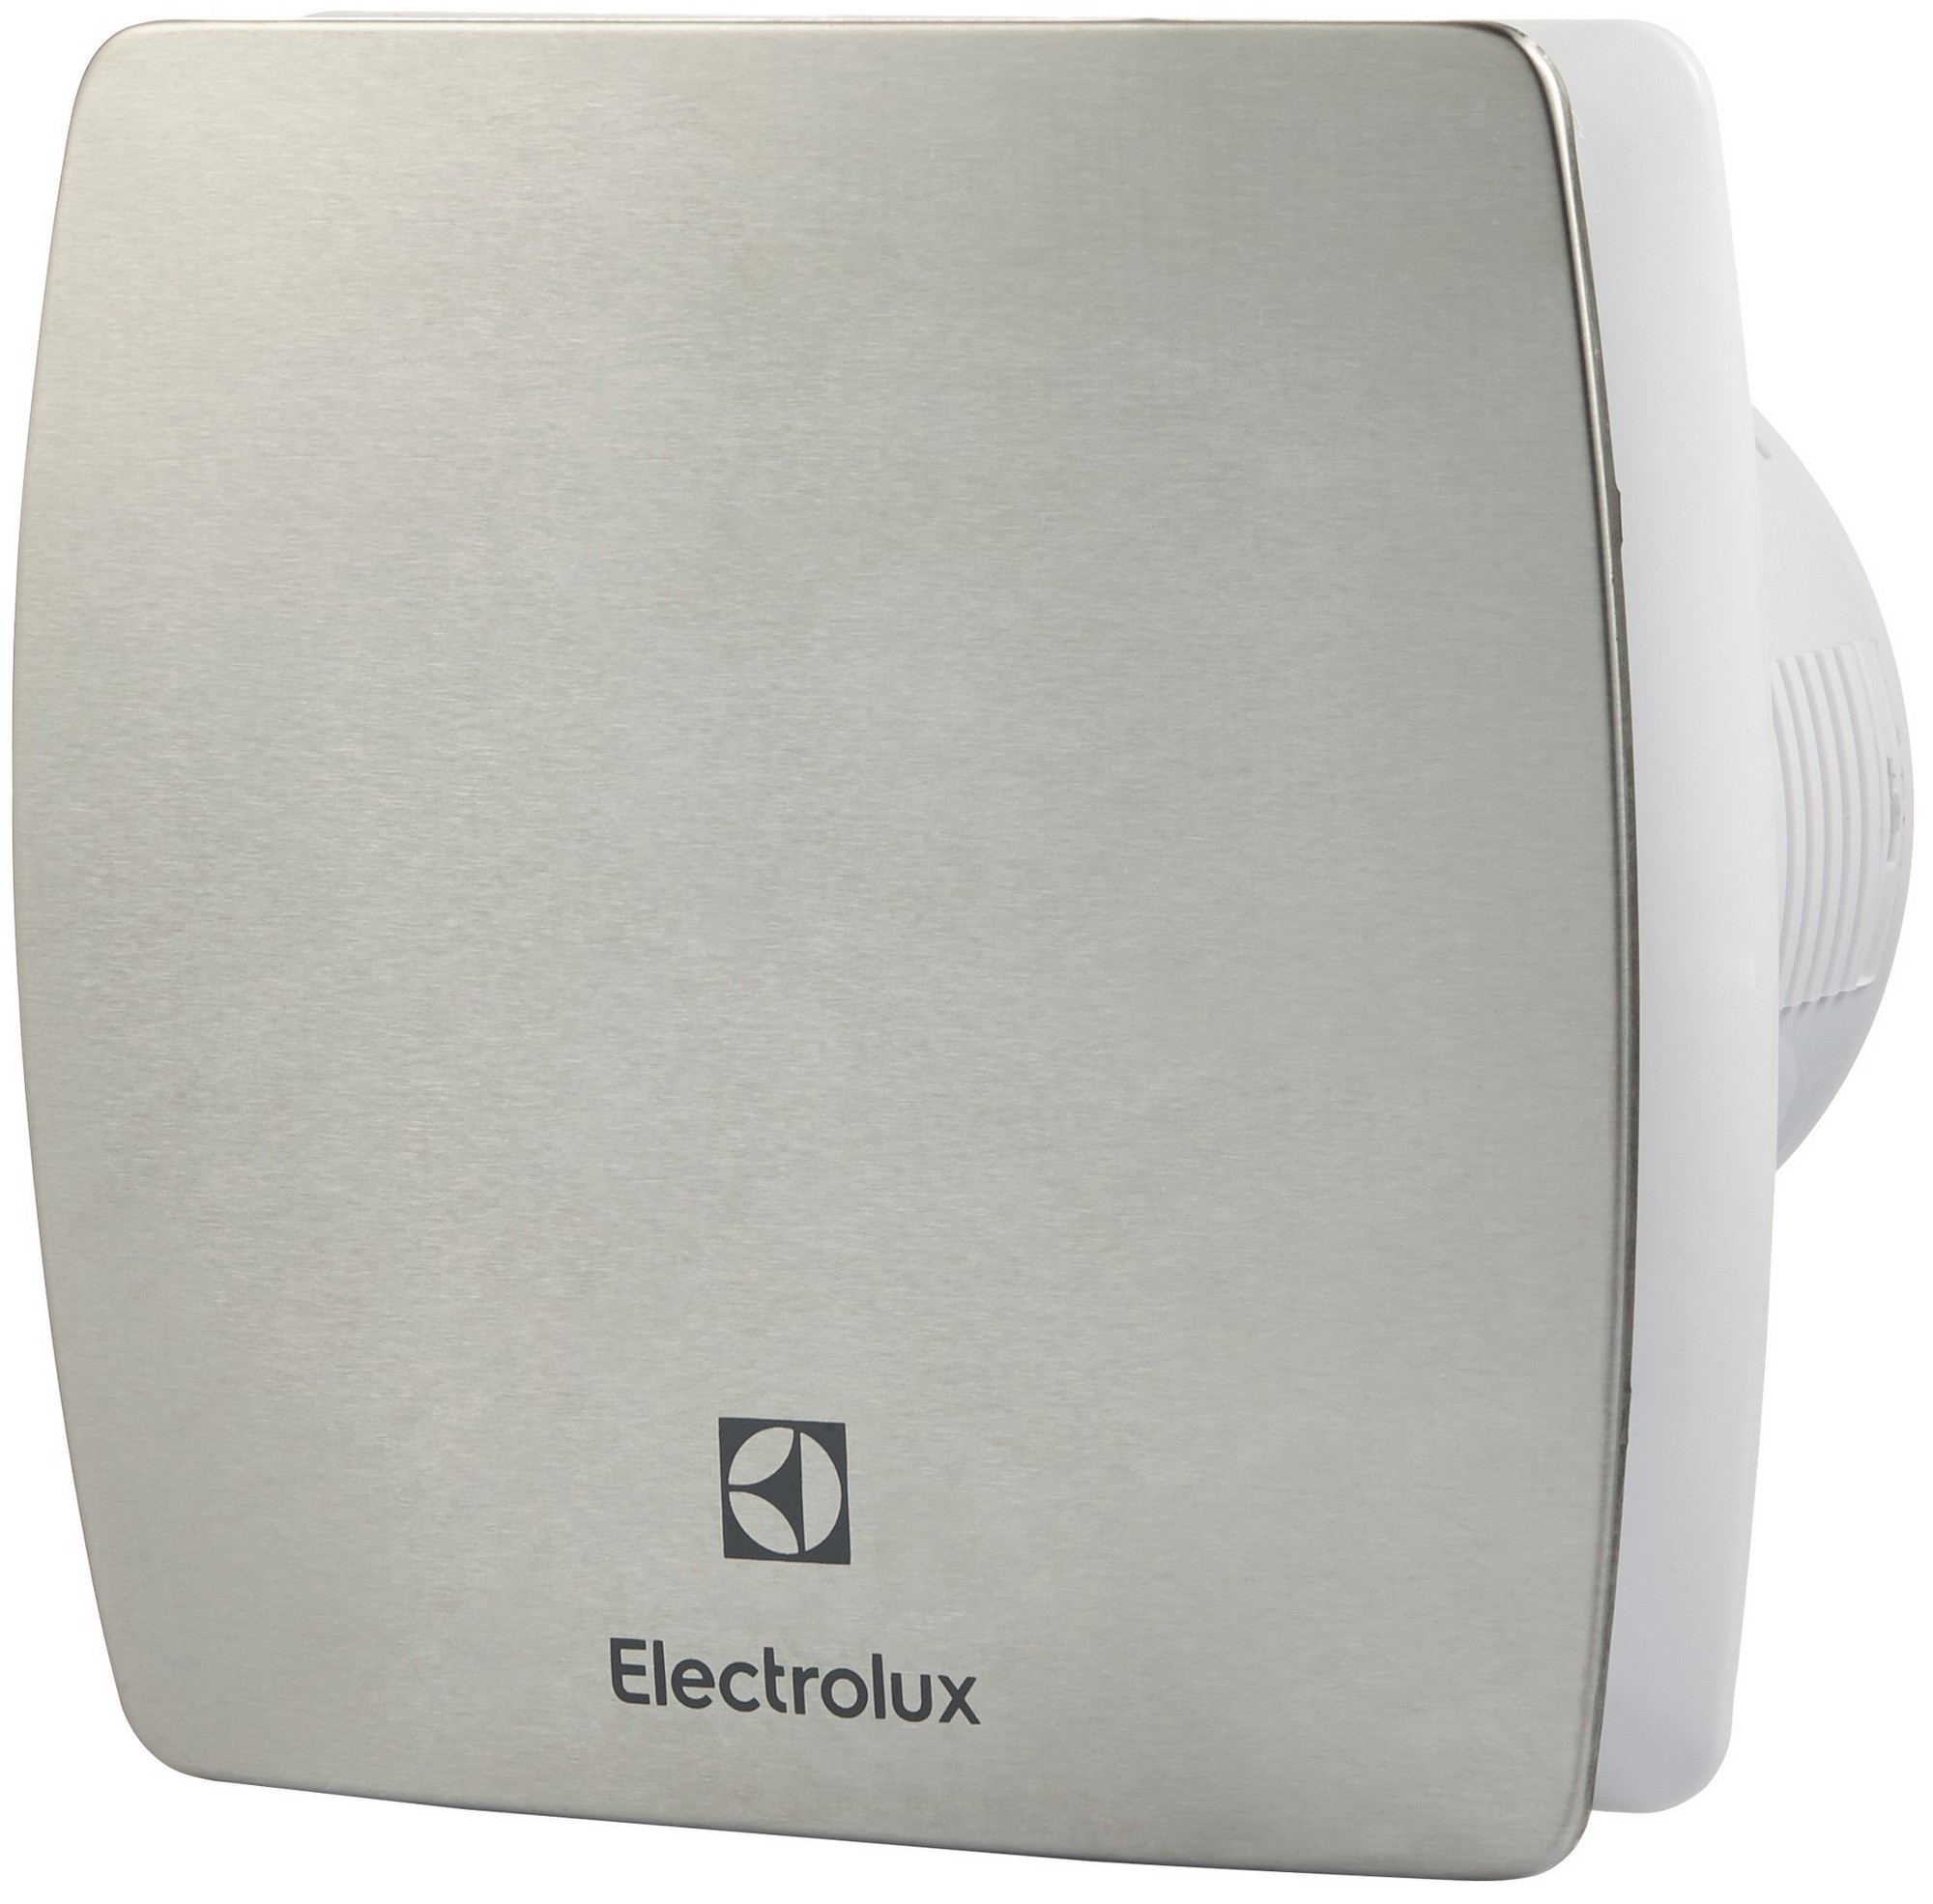 Вентилятор Electrolux вытяжной Electrolux Argentum EAFA-100